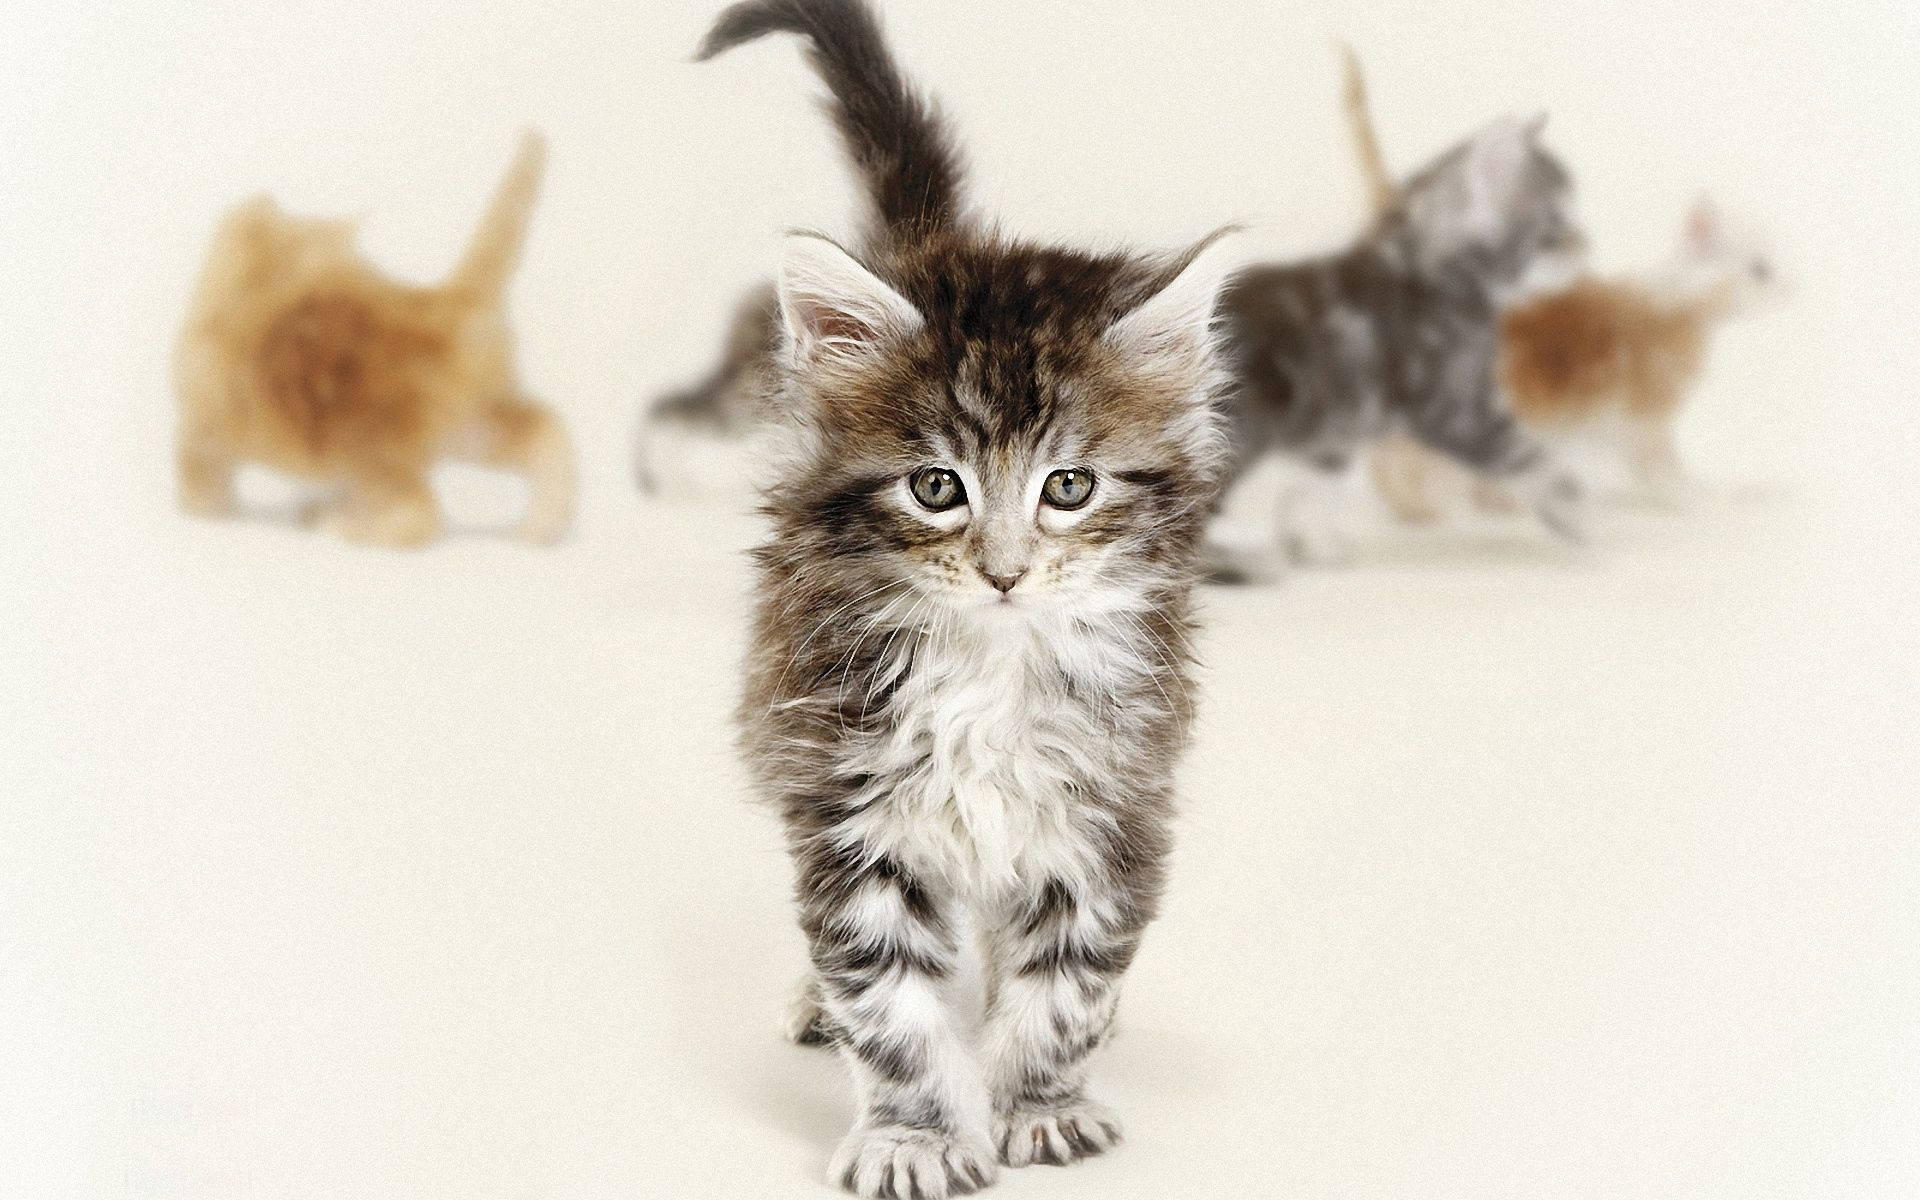 The cutest little kittens ever Wallpaper